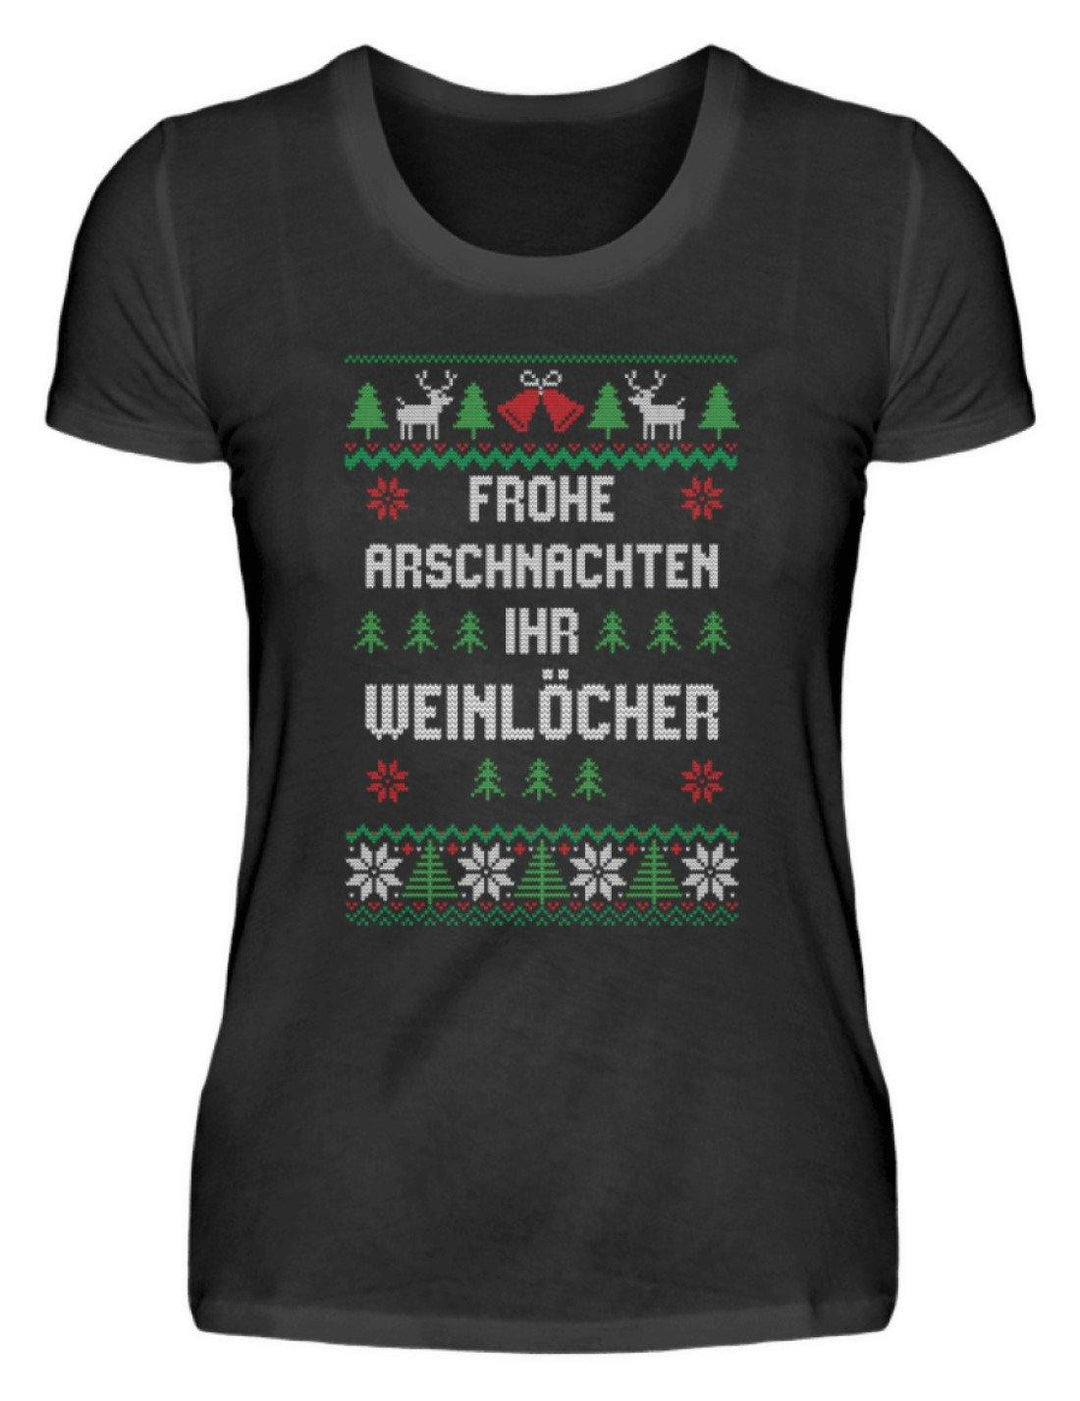 Frohe Arschnachten - Words on Shirts  - Damen Premiumshirt - Words on Shirts Sag es mit dem Mittelfinger Shirts Hoodies Sweatshirt Taschen Gymsack Spruch Sprüche Statement